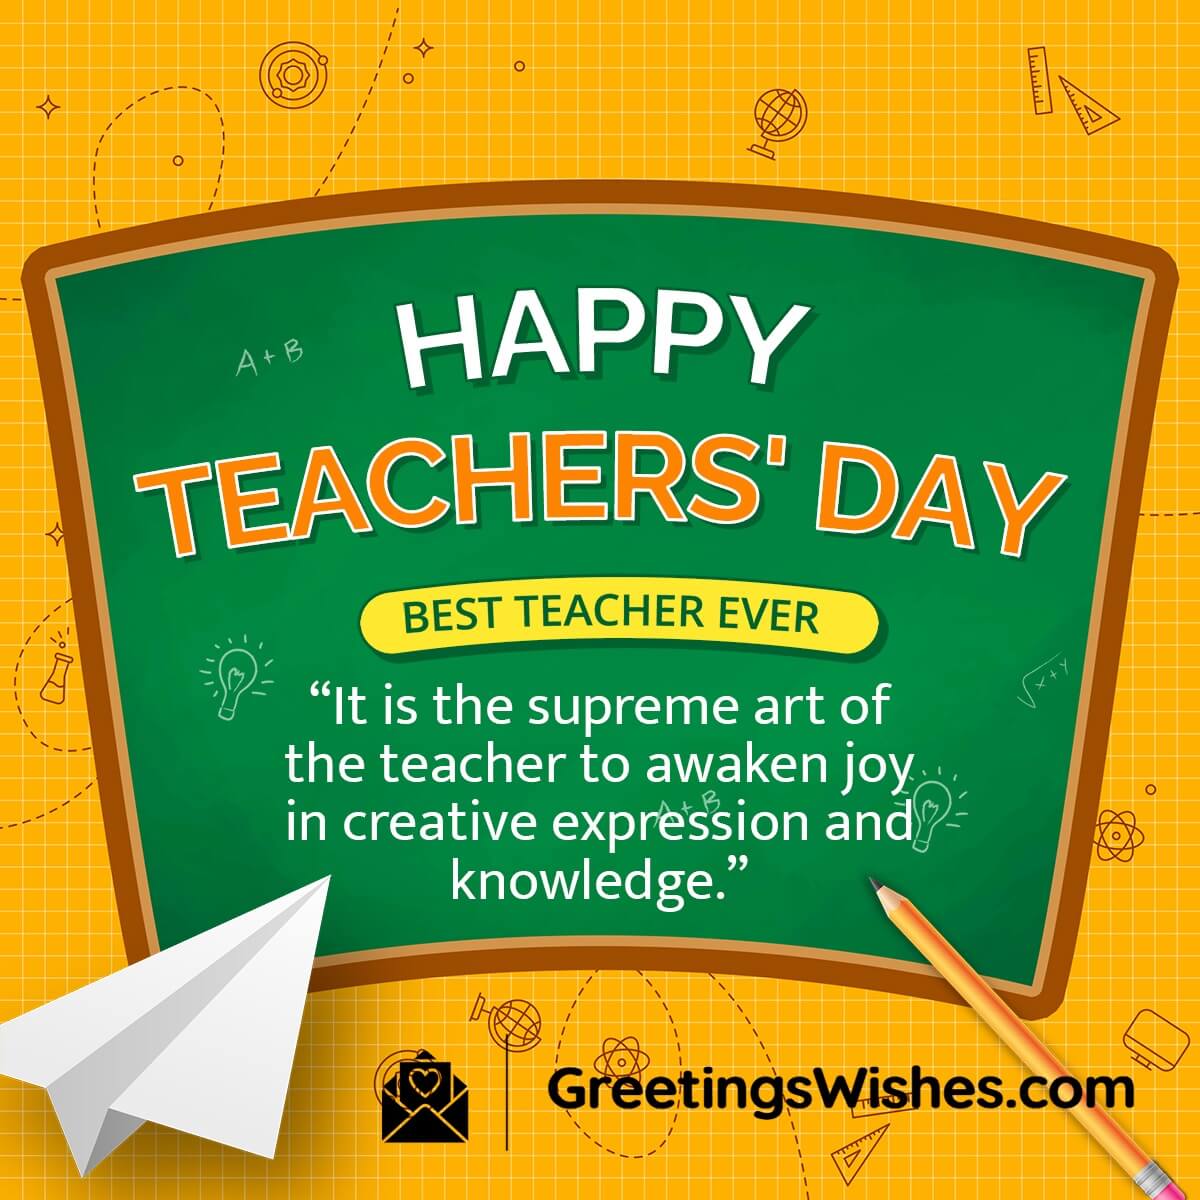 Happy Teachers Day Quote Image